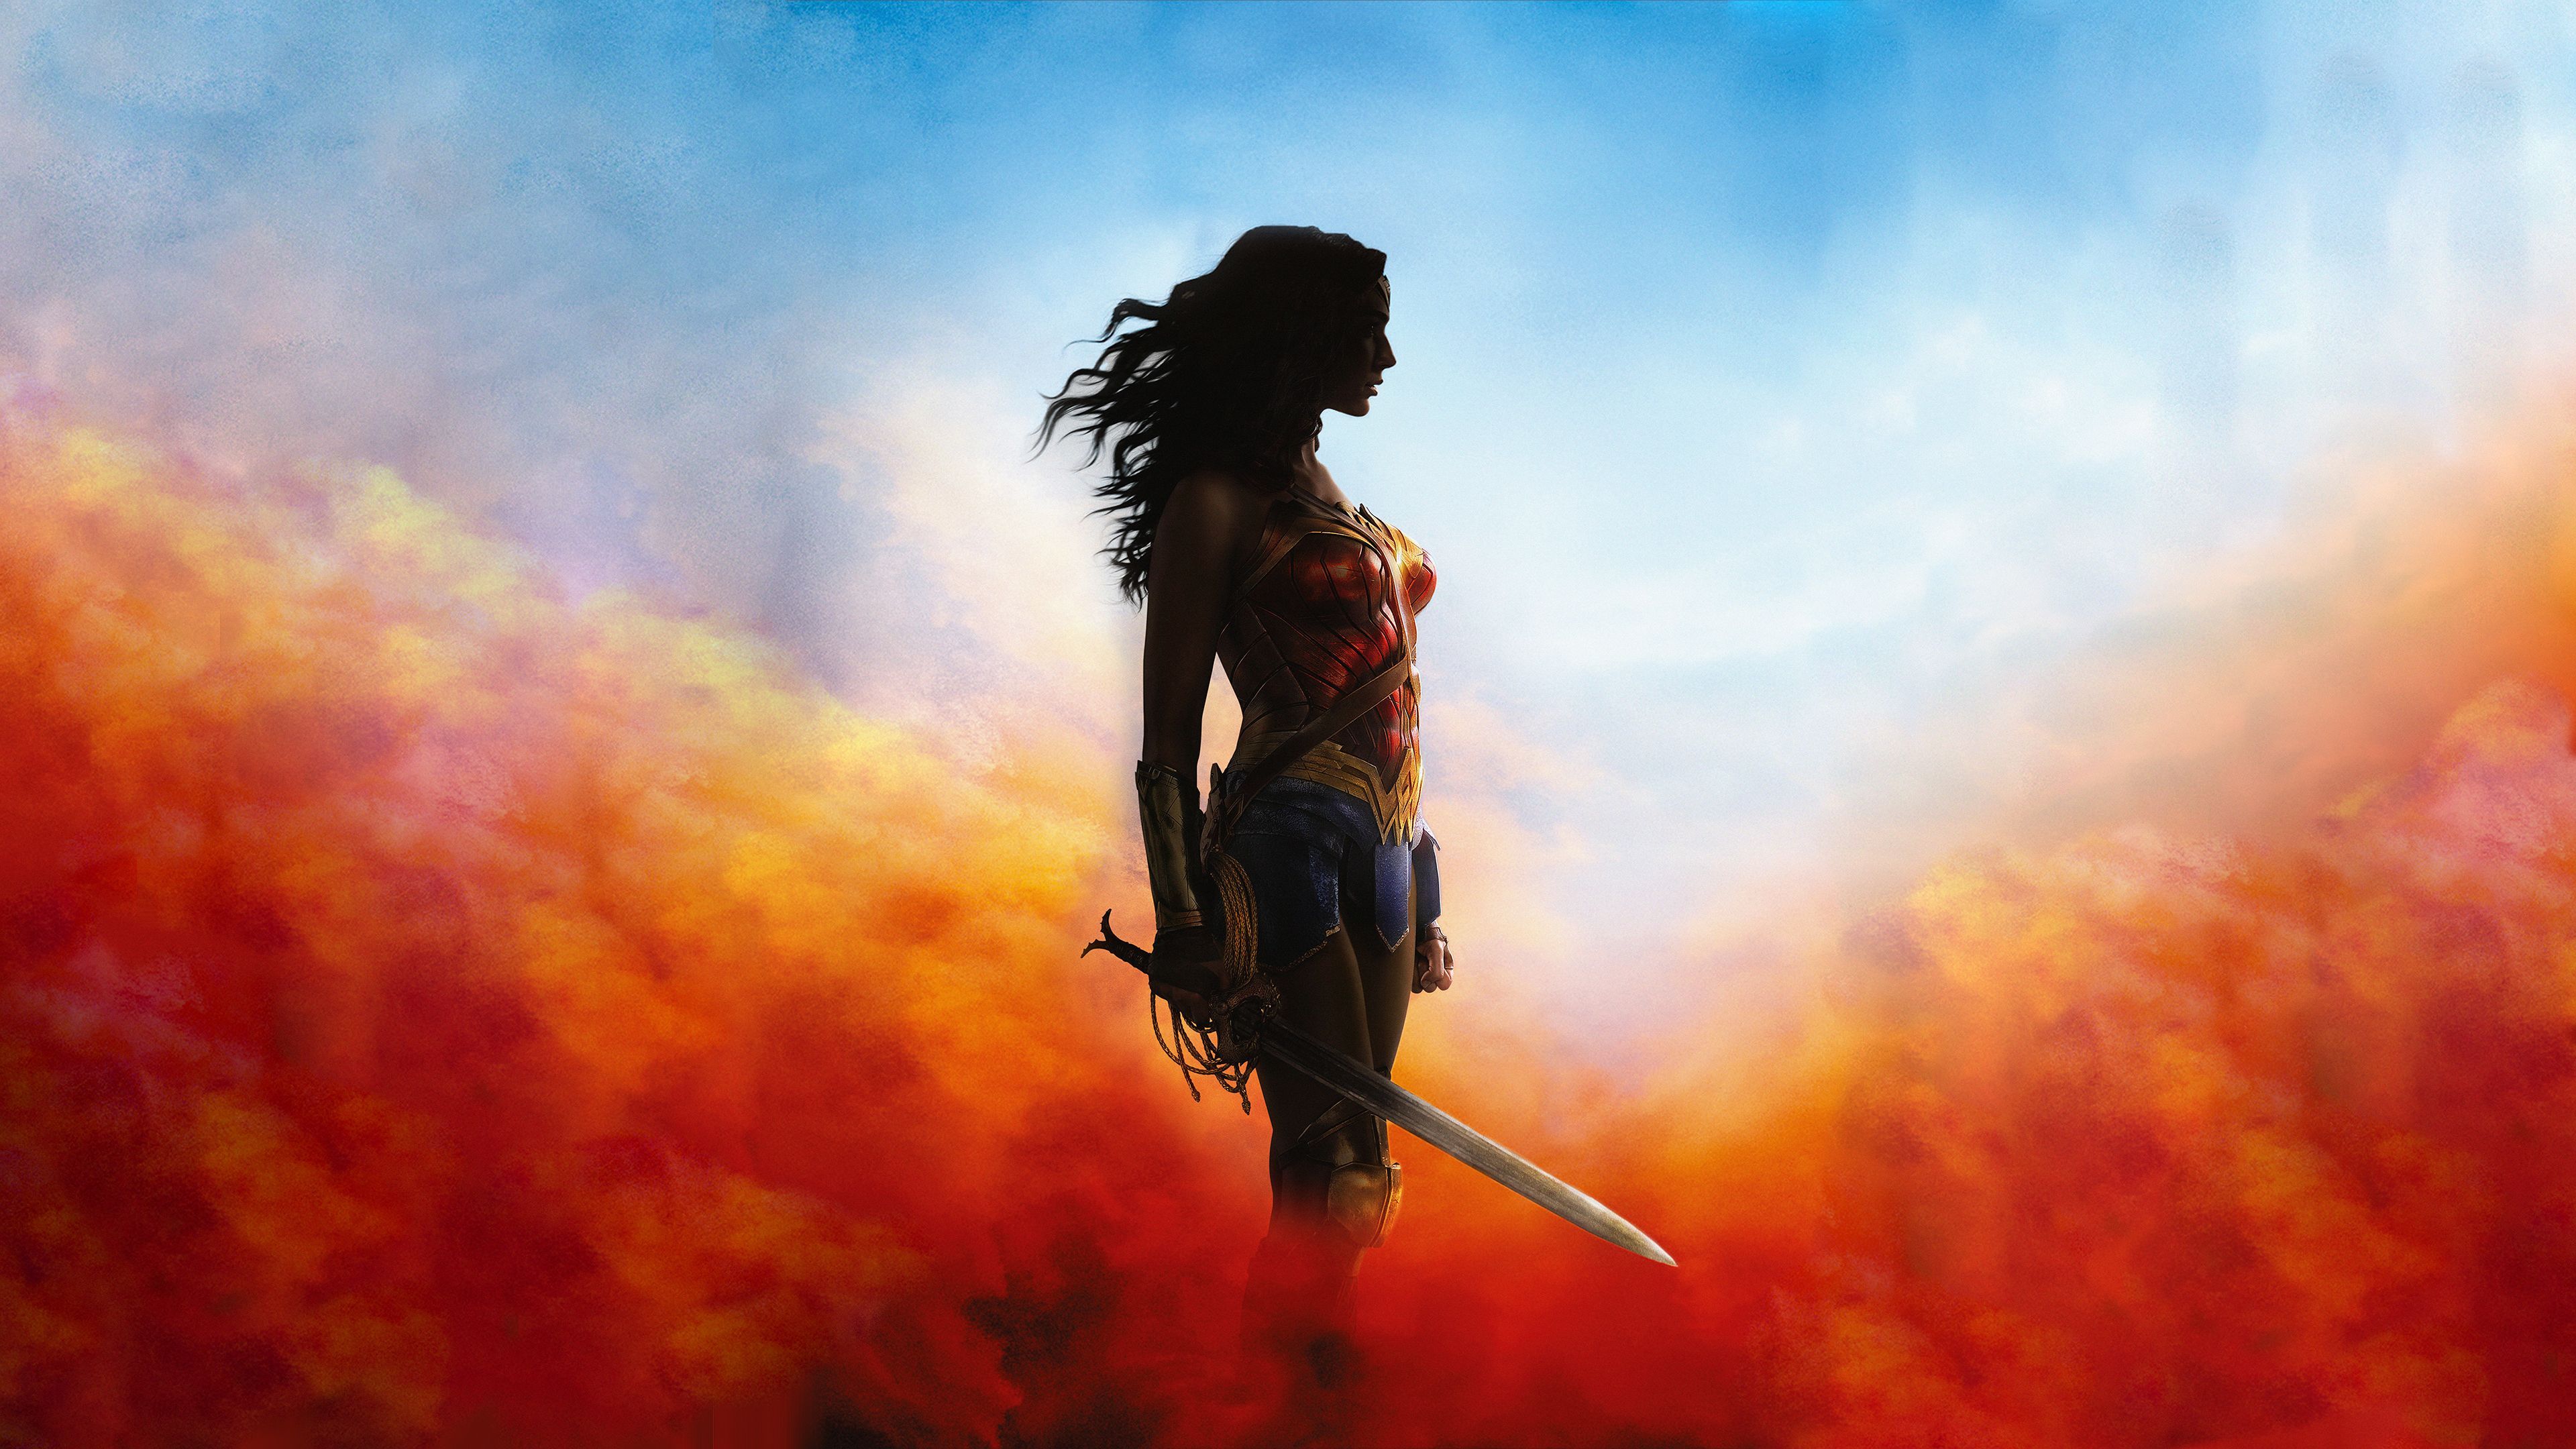 4k Wonder Woman 2018 wonder woman wallpaper, superheroes